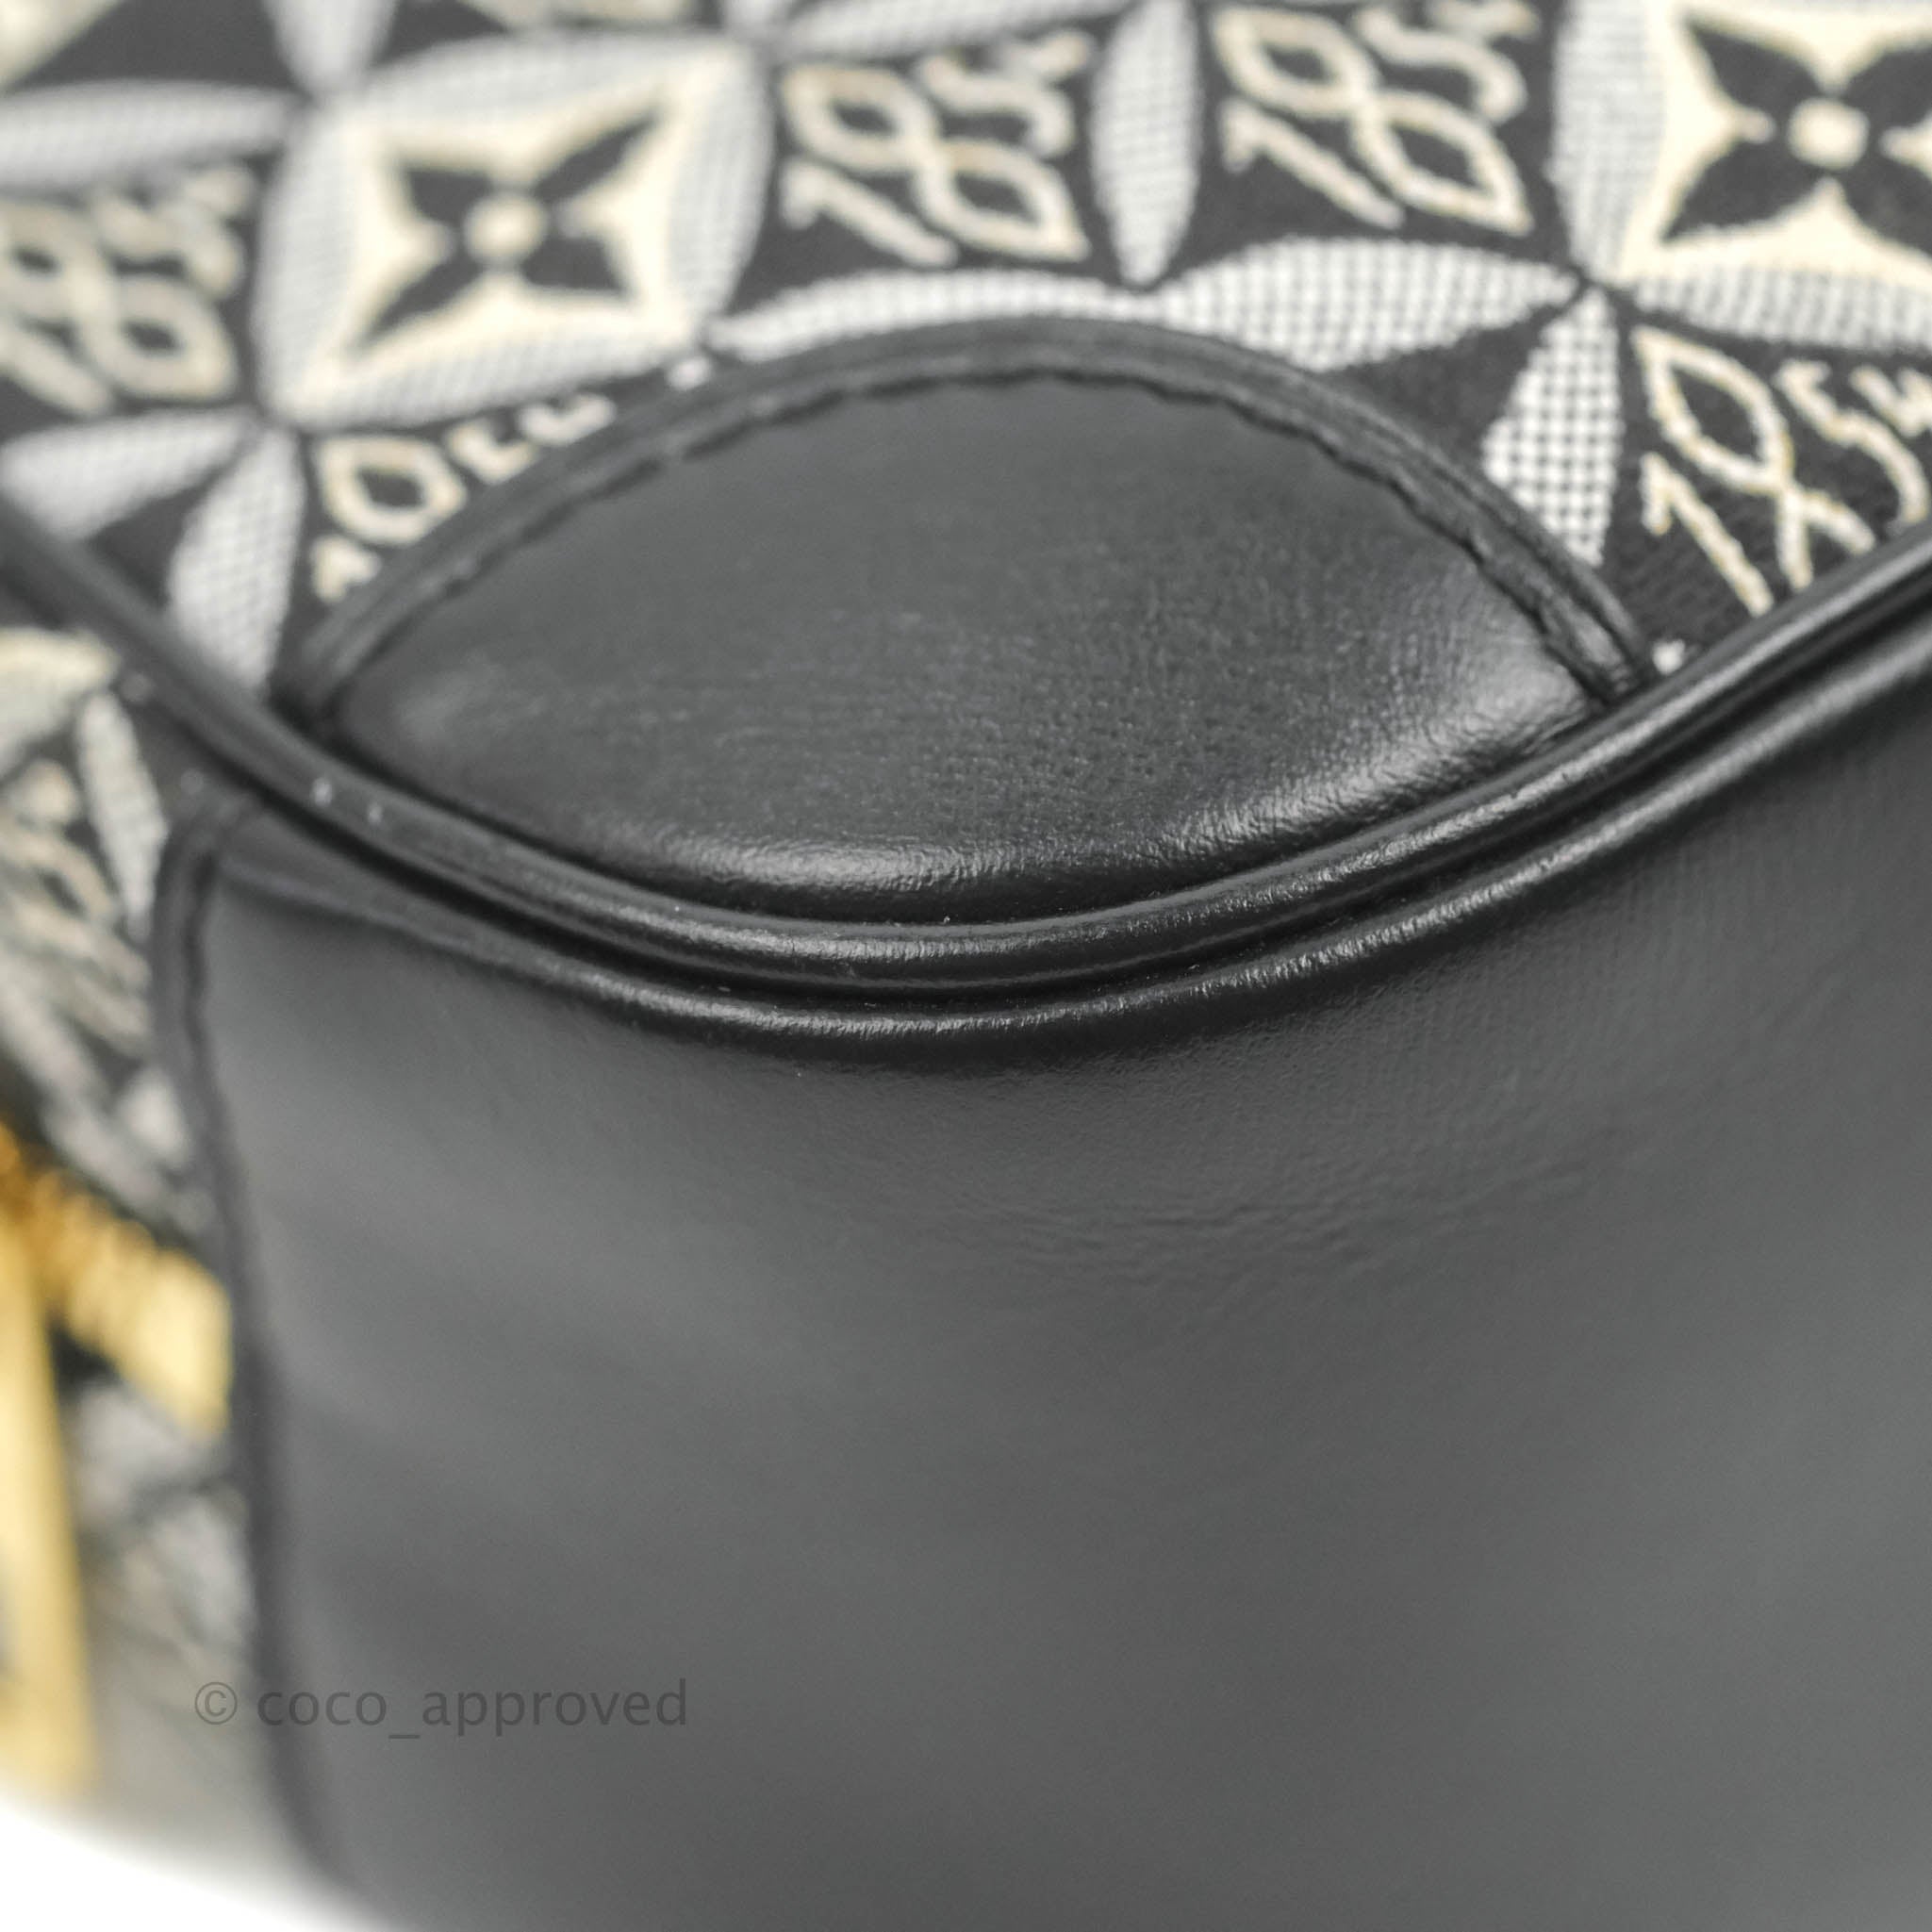 Louis Vuitton Black Jacquard Since 1854 Deauville Mini Camera Bag